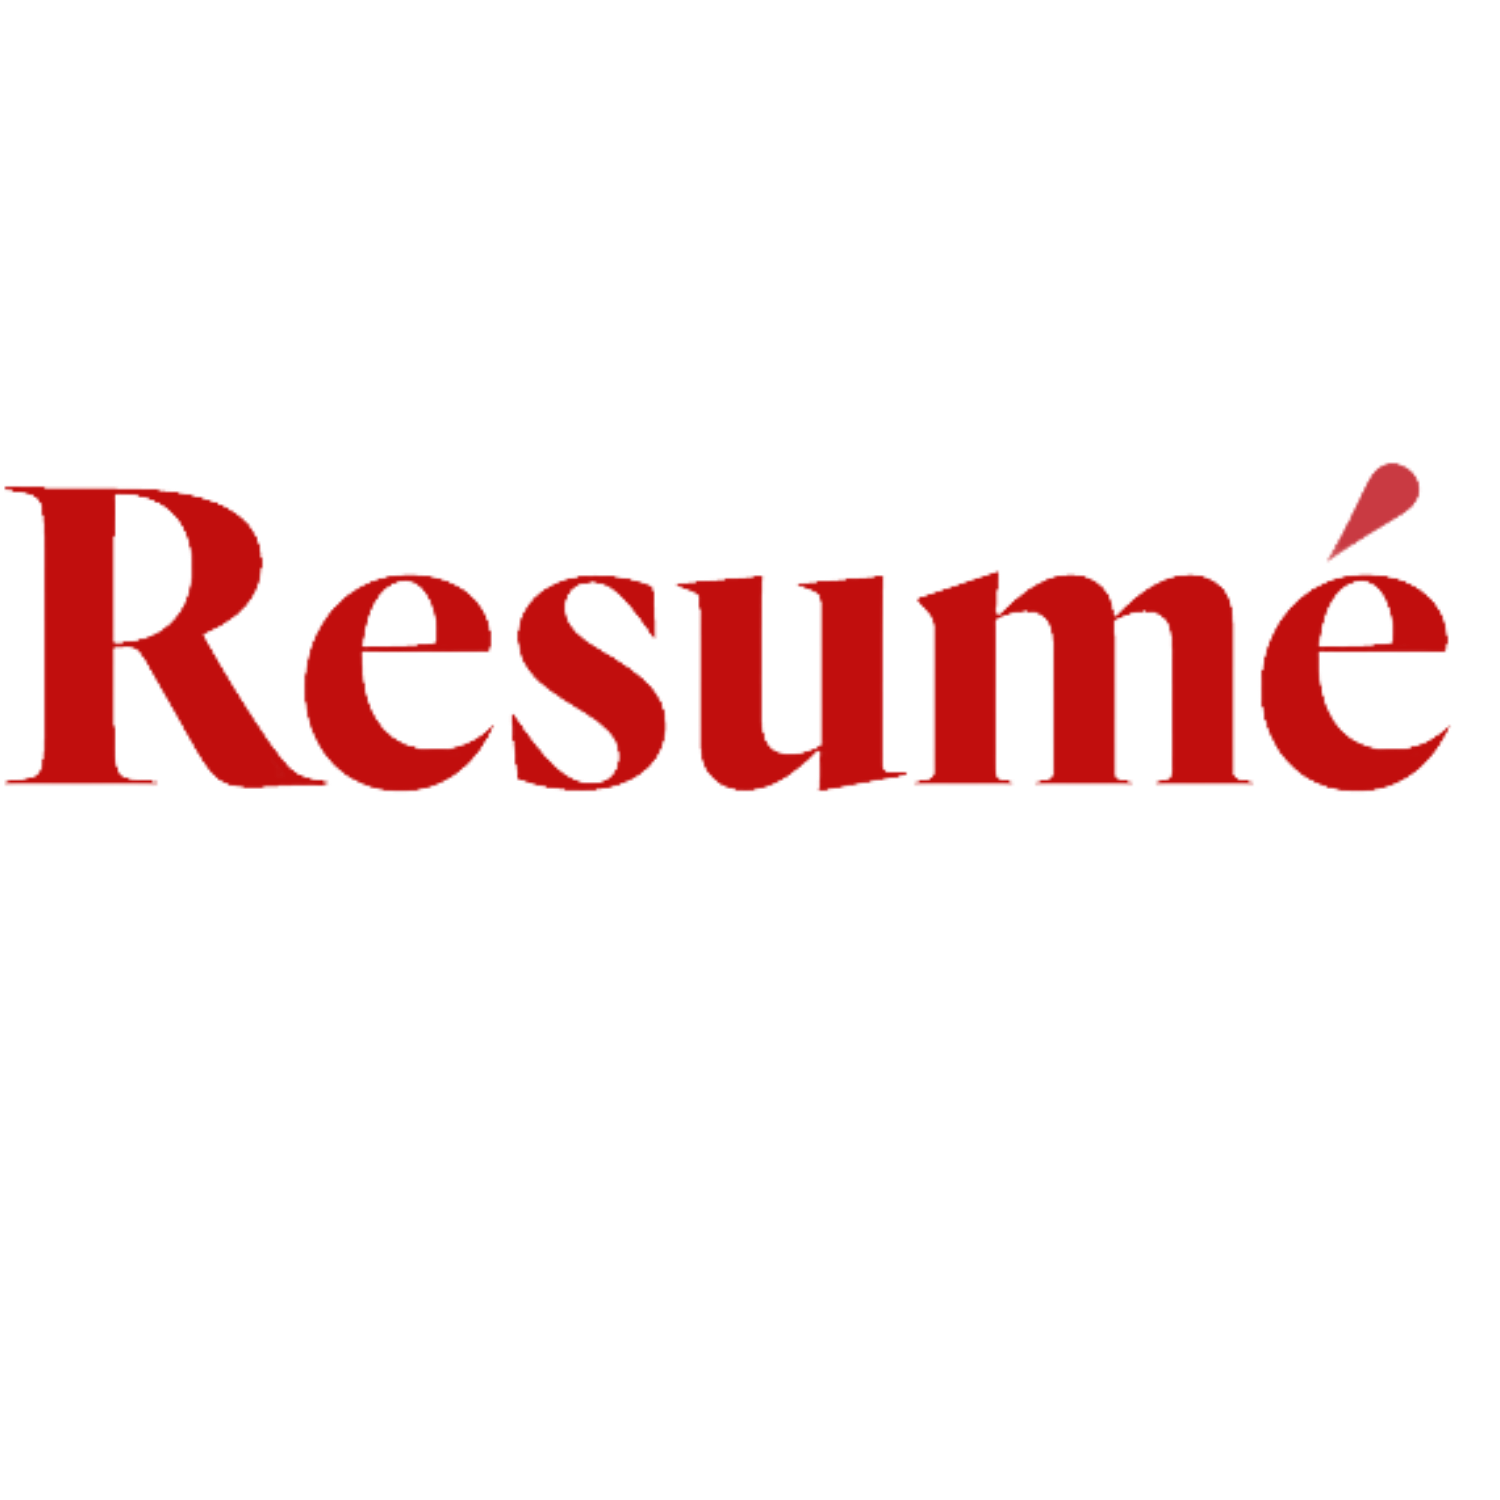 Resume – Veckans kampanj